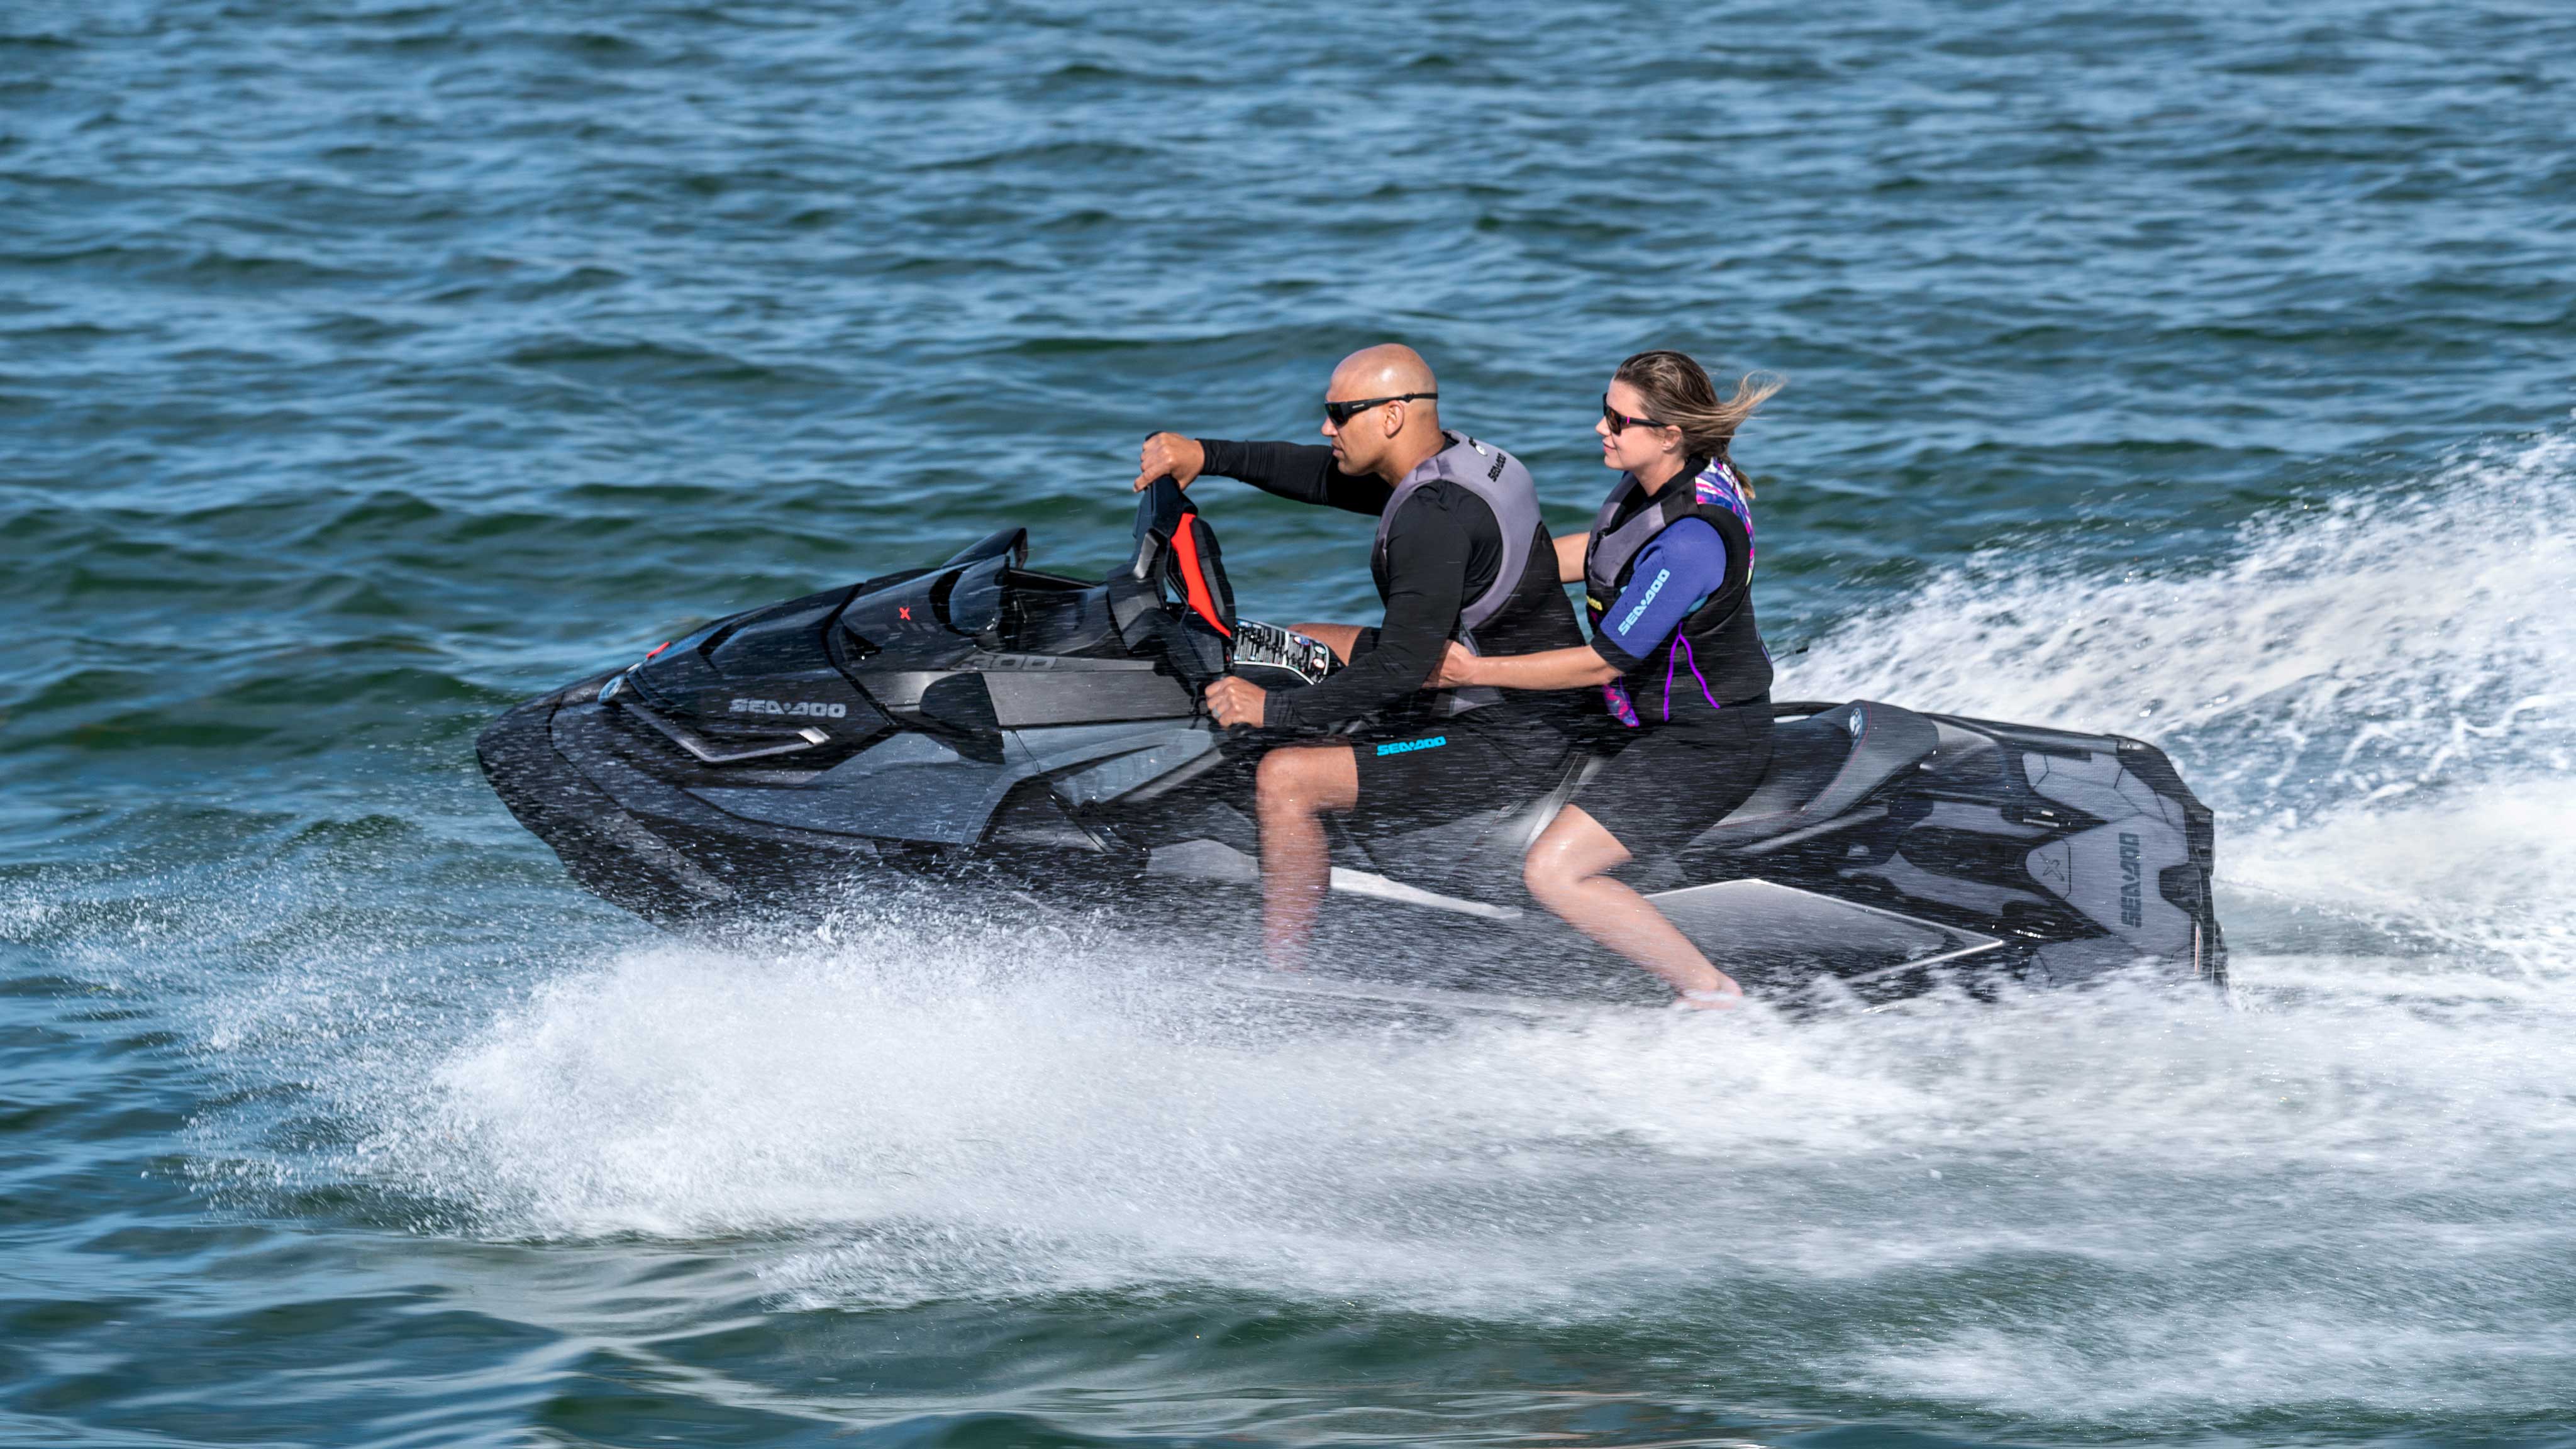 一对情侣共同乘坐 Sea-Doo RXT-X 摩托艇